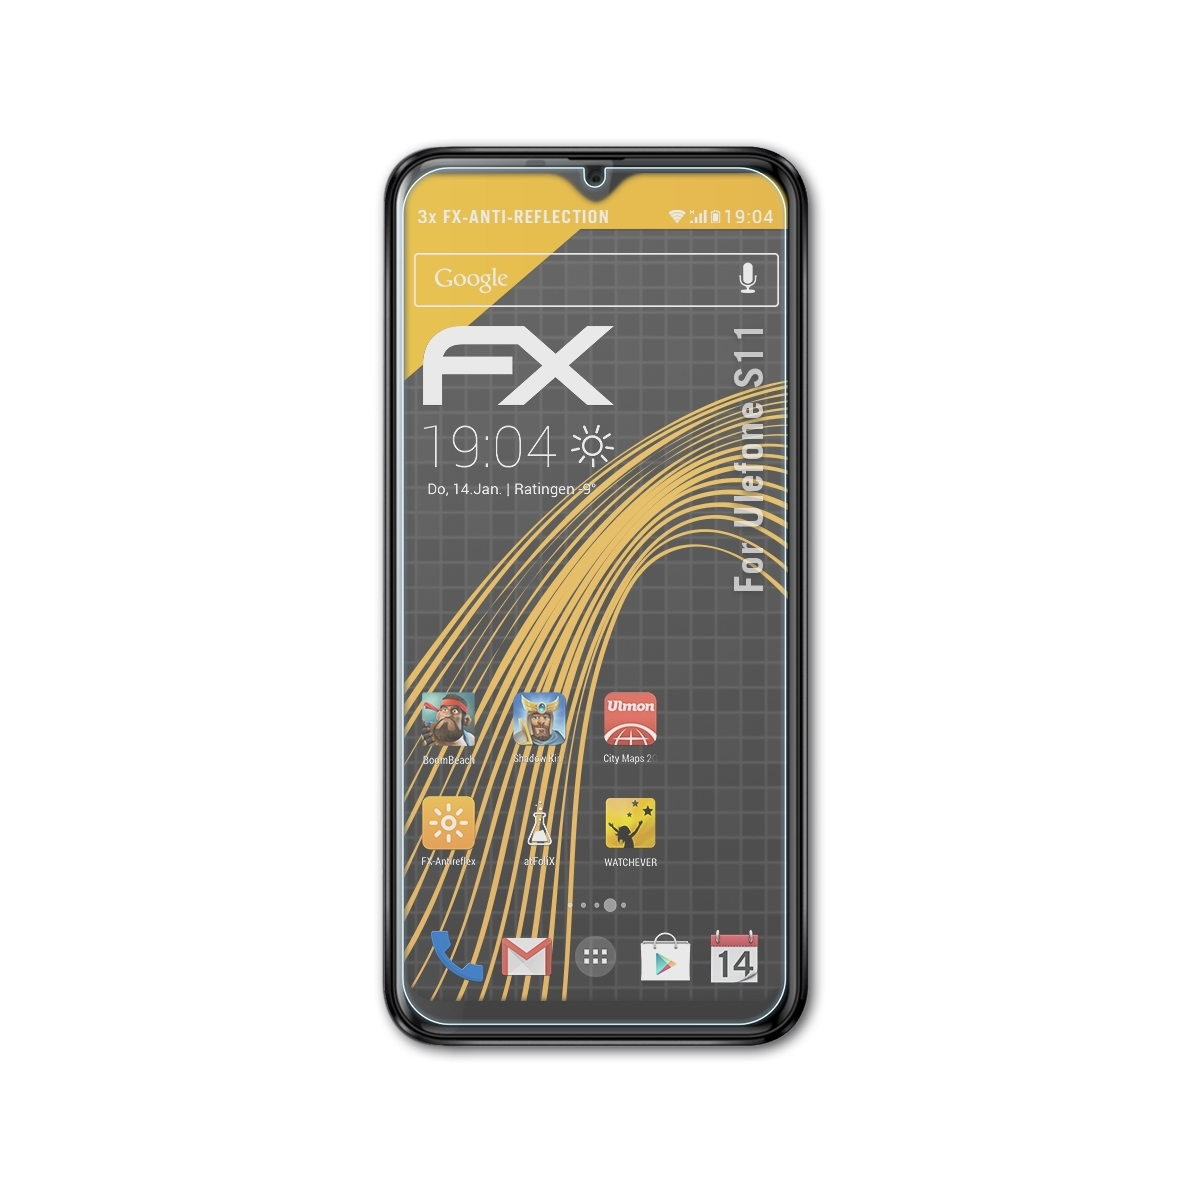 ATFOLIX Ulefone S11) 3x Displayschutz(für FX-Antireflex